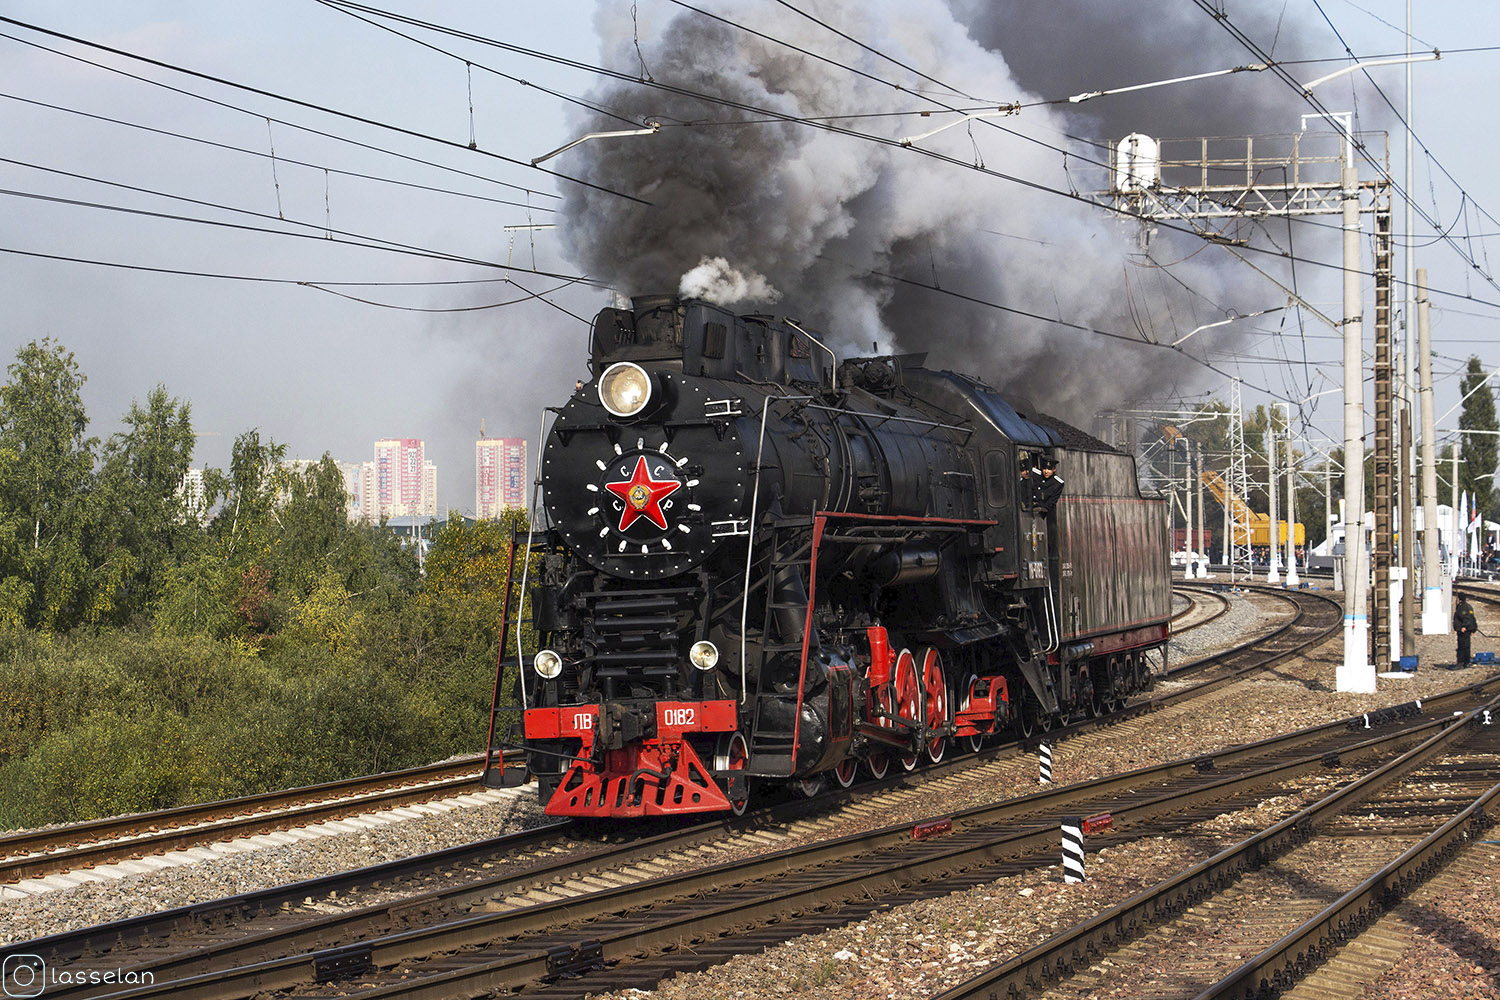 ЛВ-0182; Московская железная дорога — IV Международный железнодорожный салон "ЭКСПО 1520" 2013